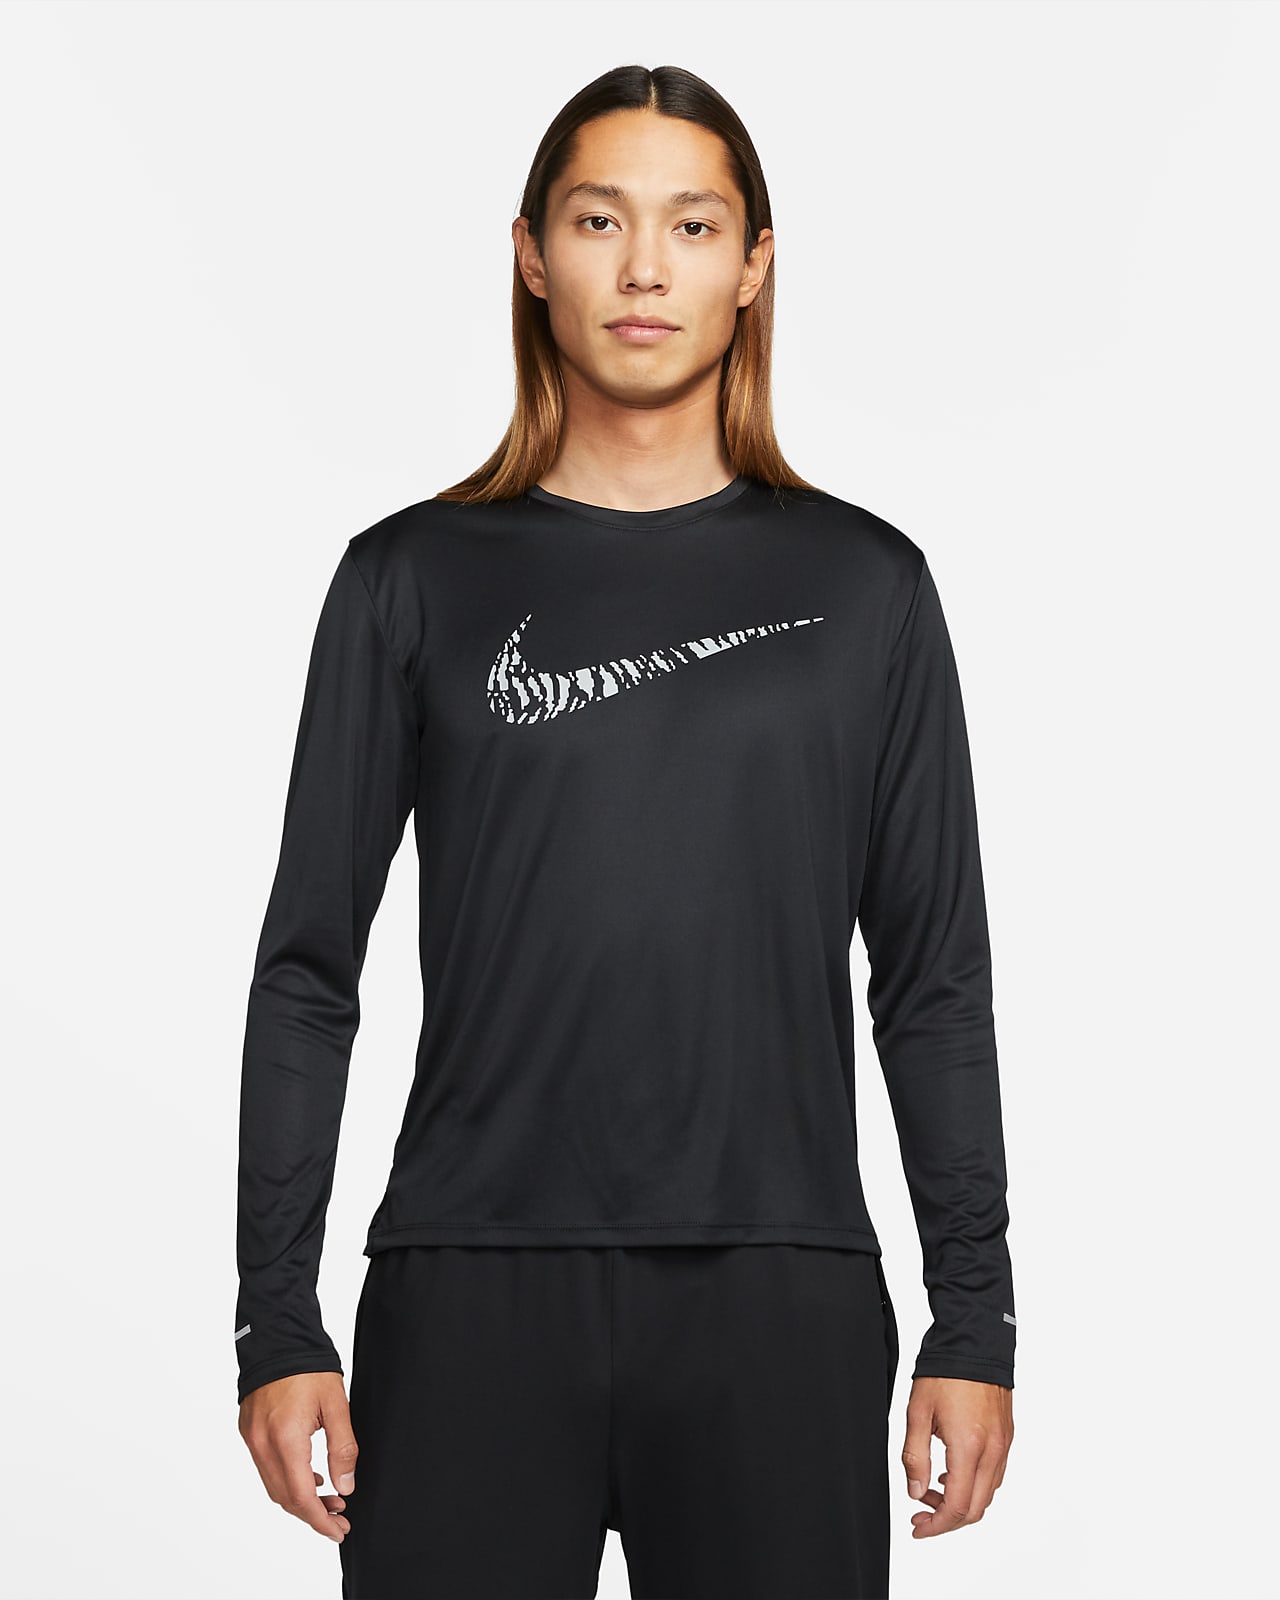 Nike Dri-FIT UV Run Division Miler Men's Graphic Long-Sleeve Top